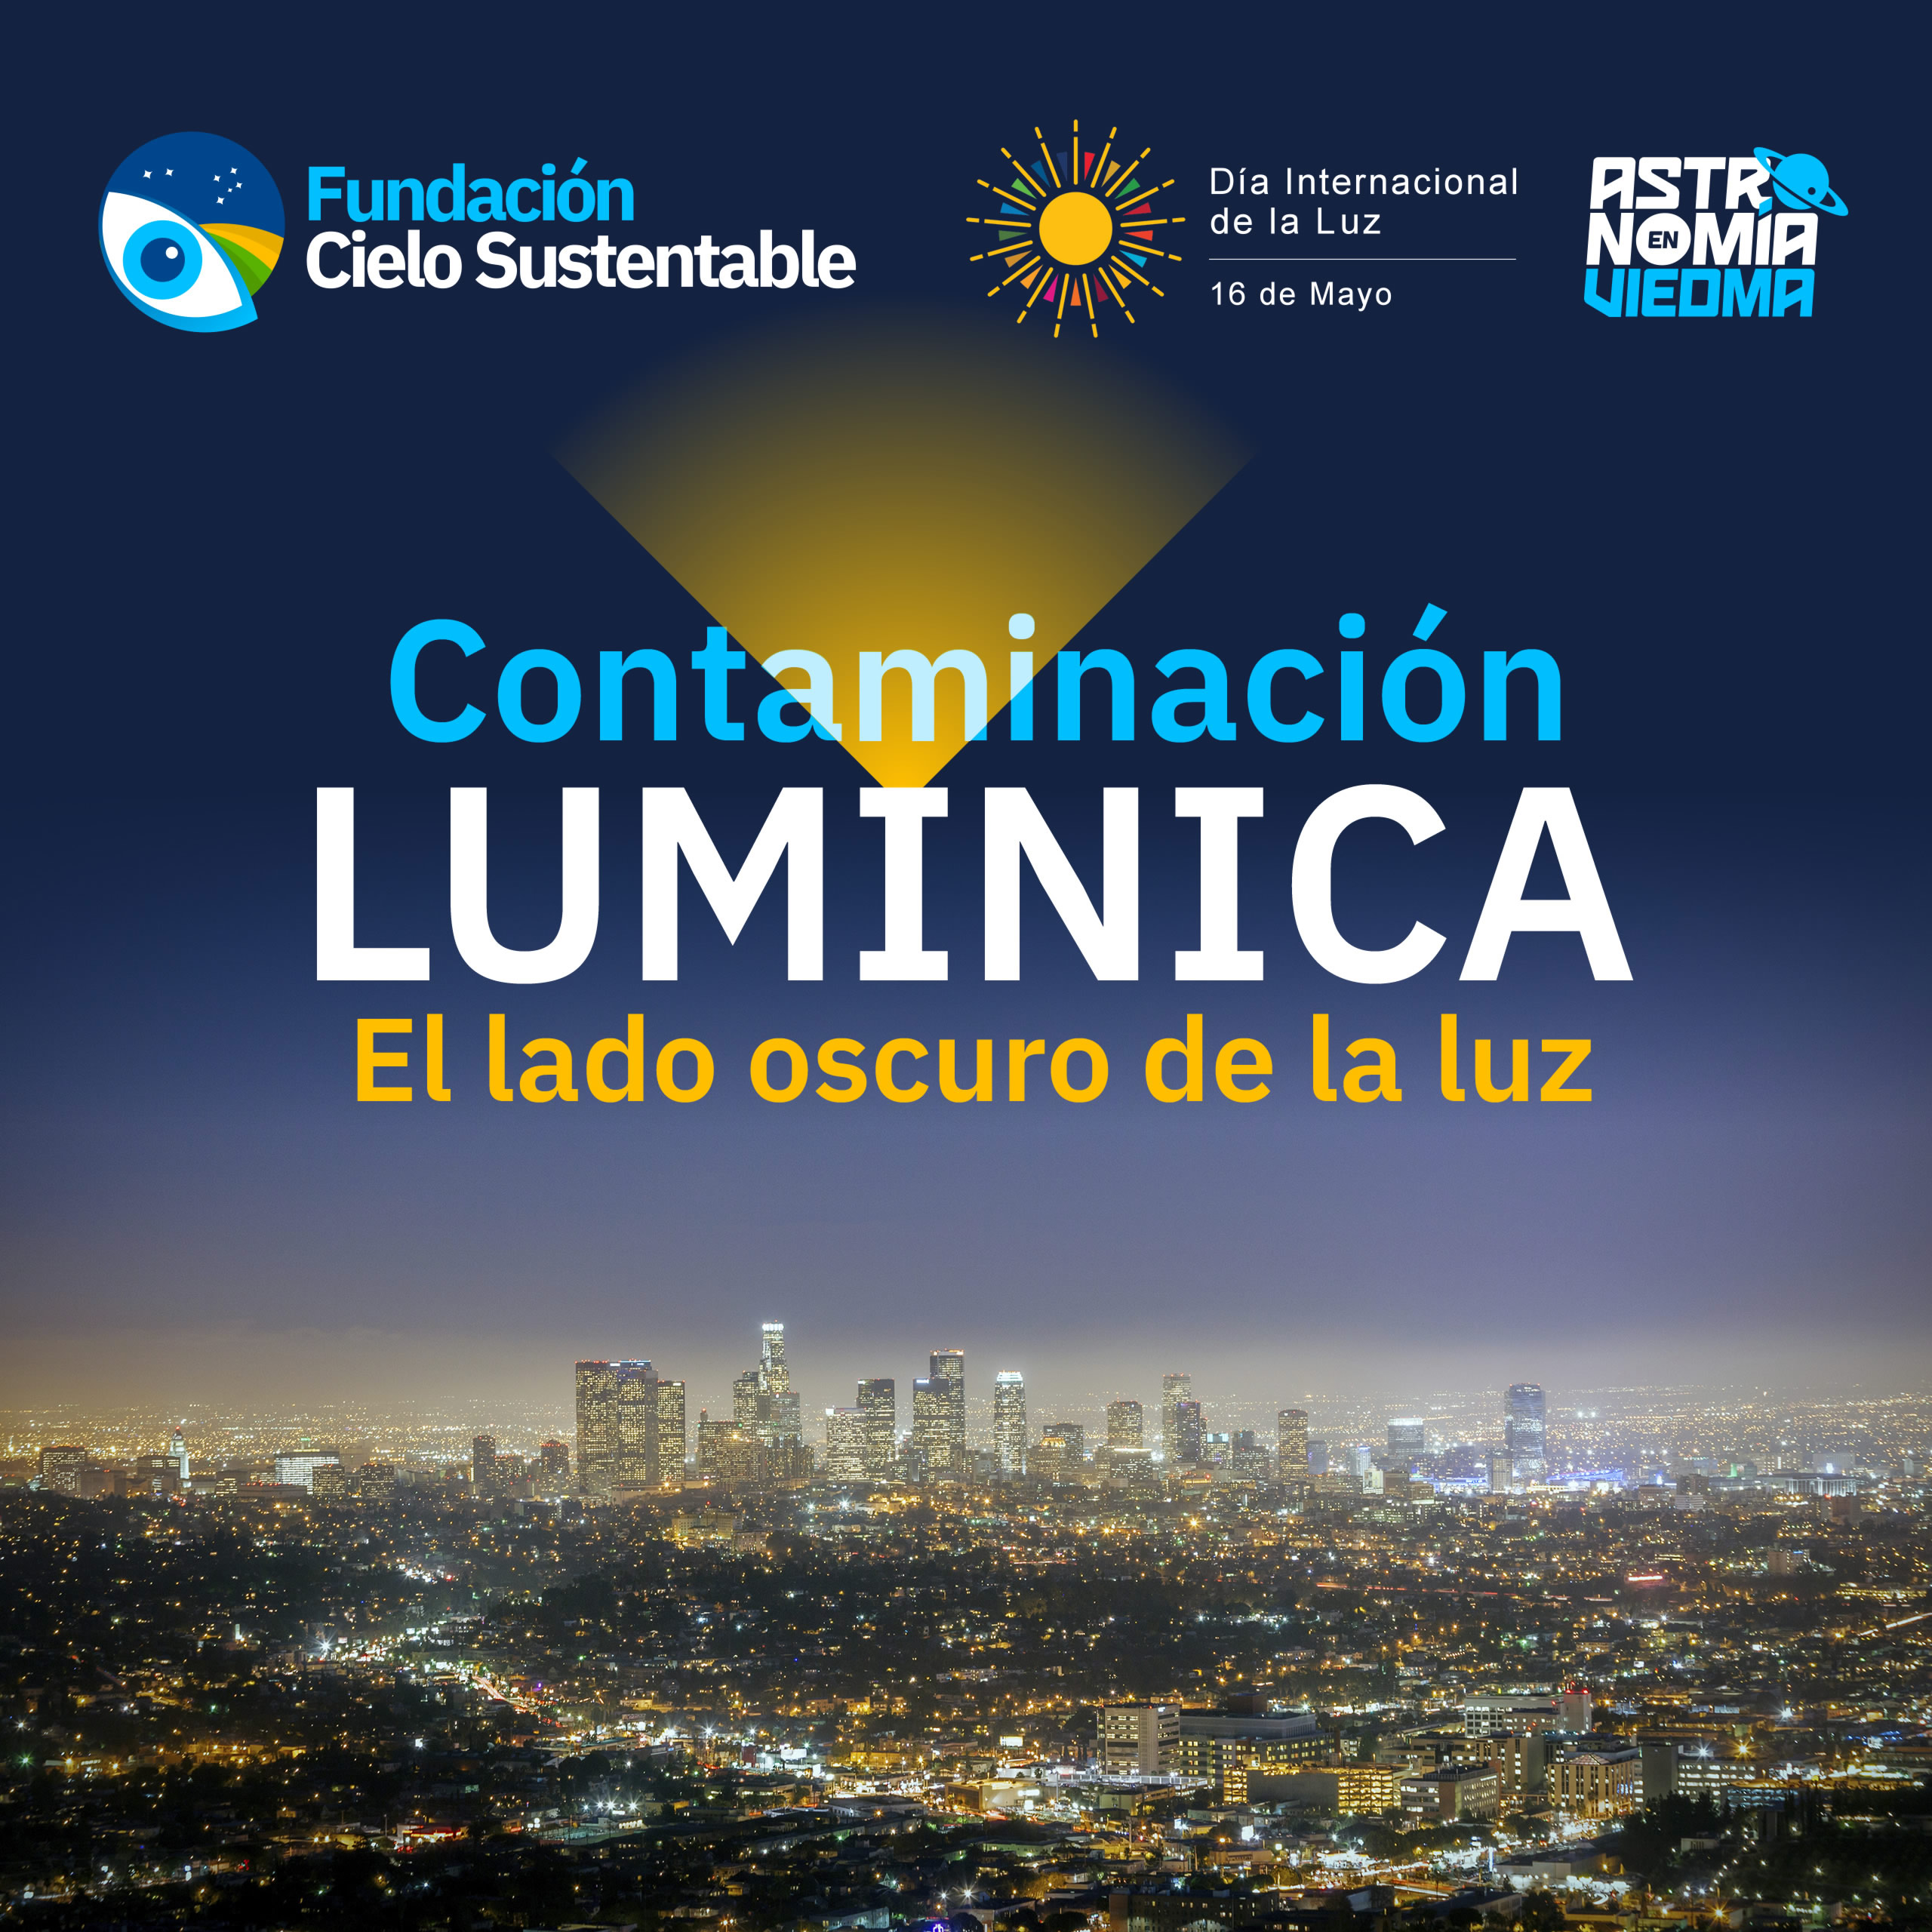 Charla "Contaminación lumínica: El lado oscuro de la luz"